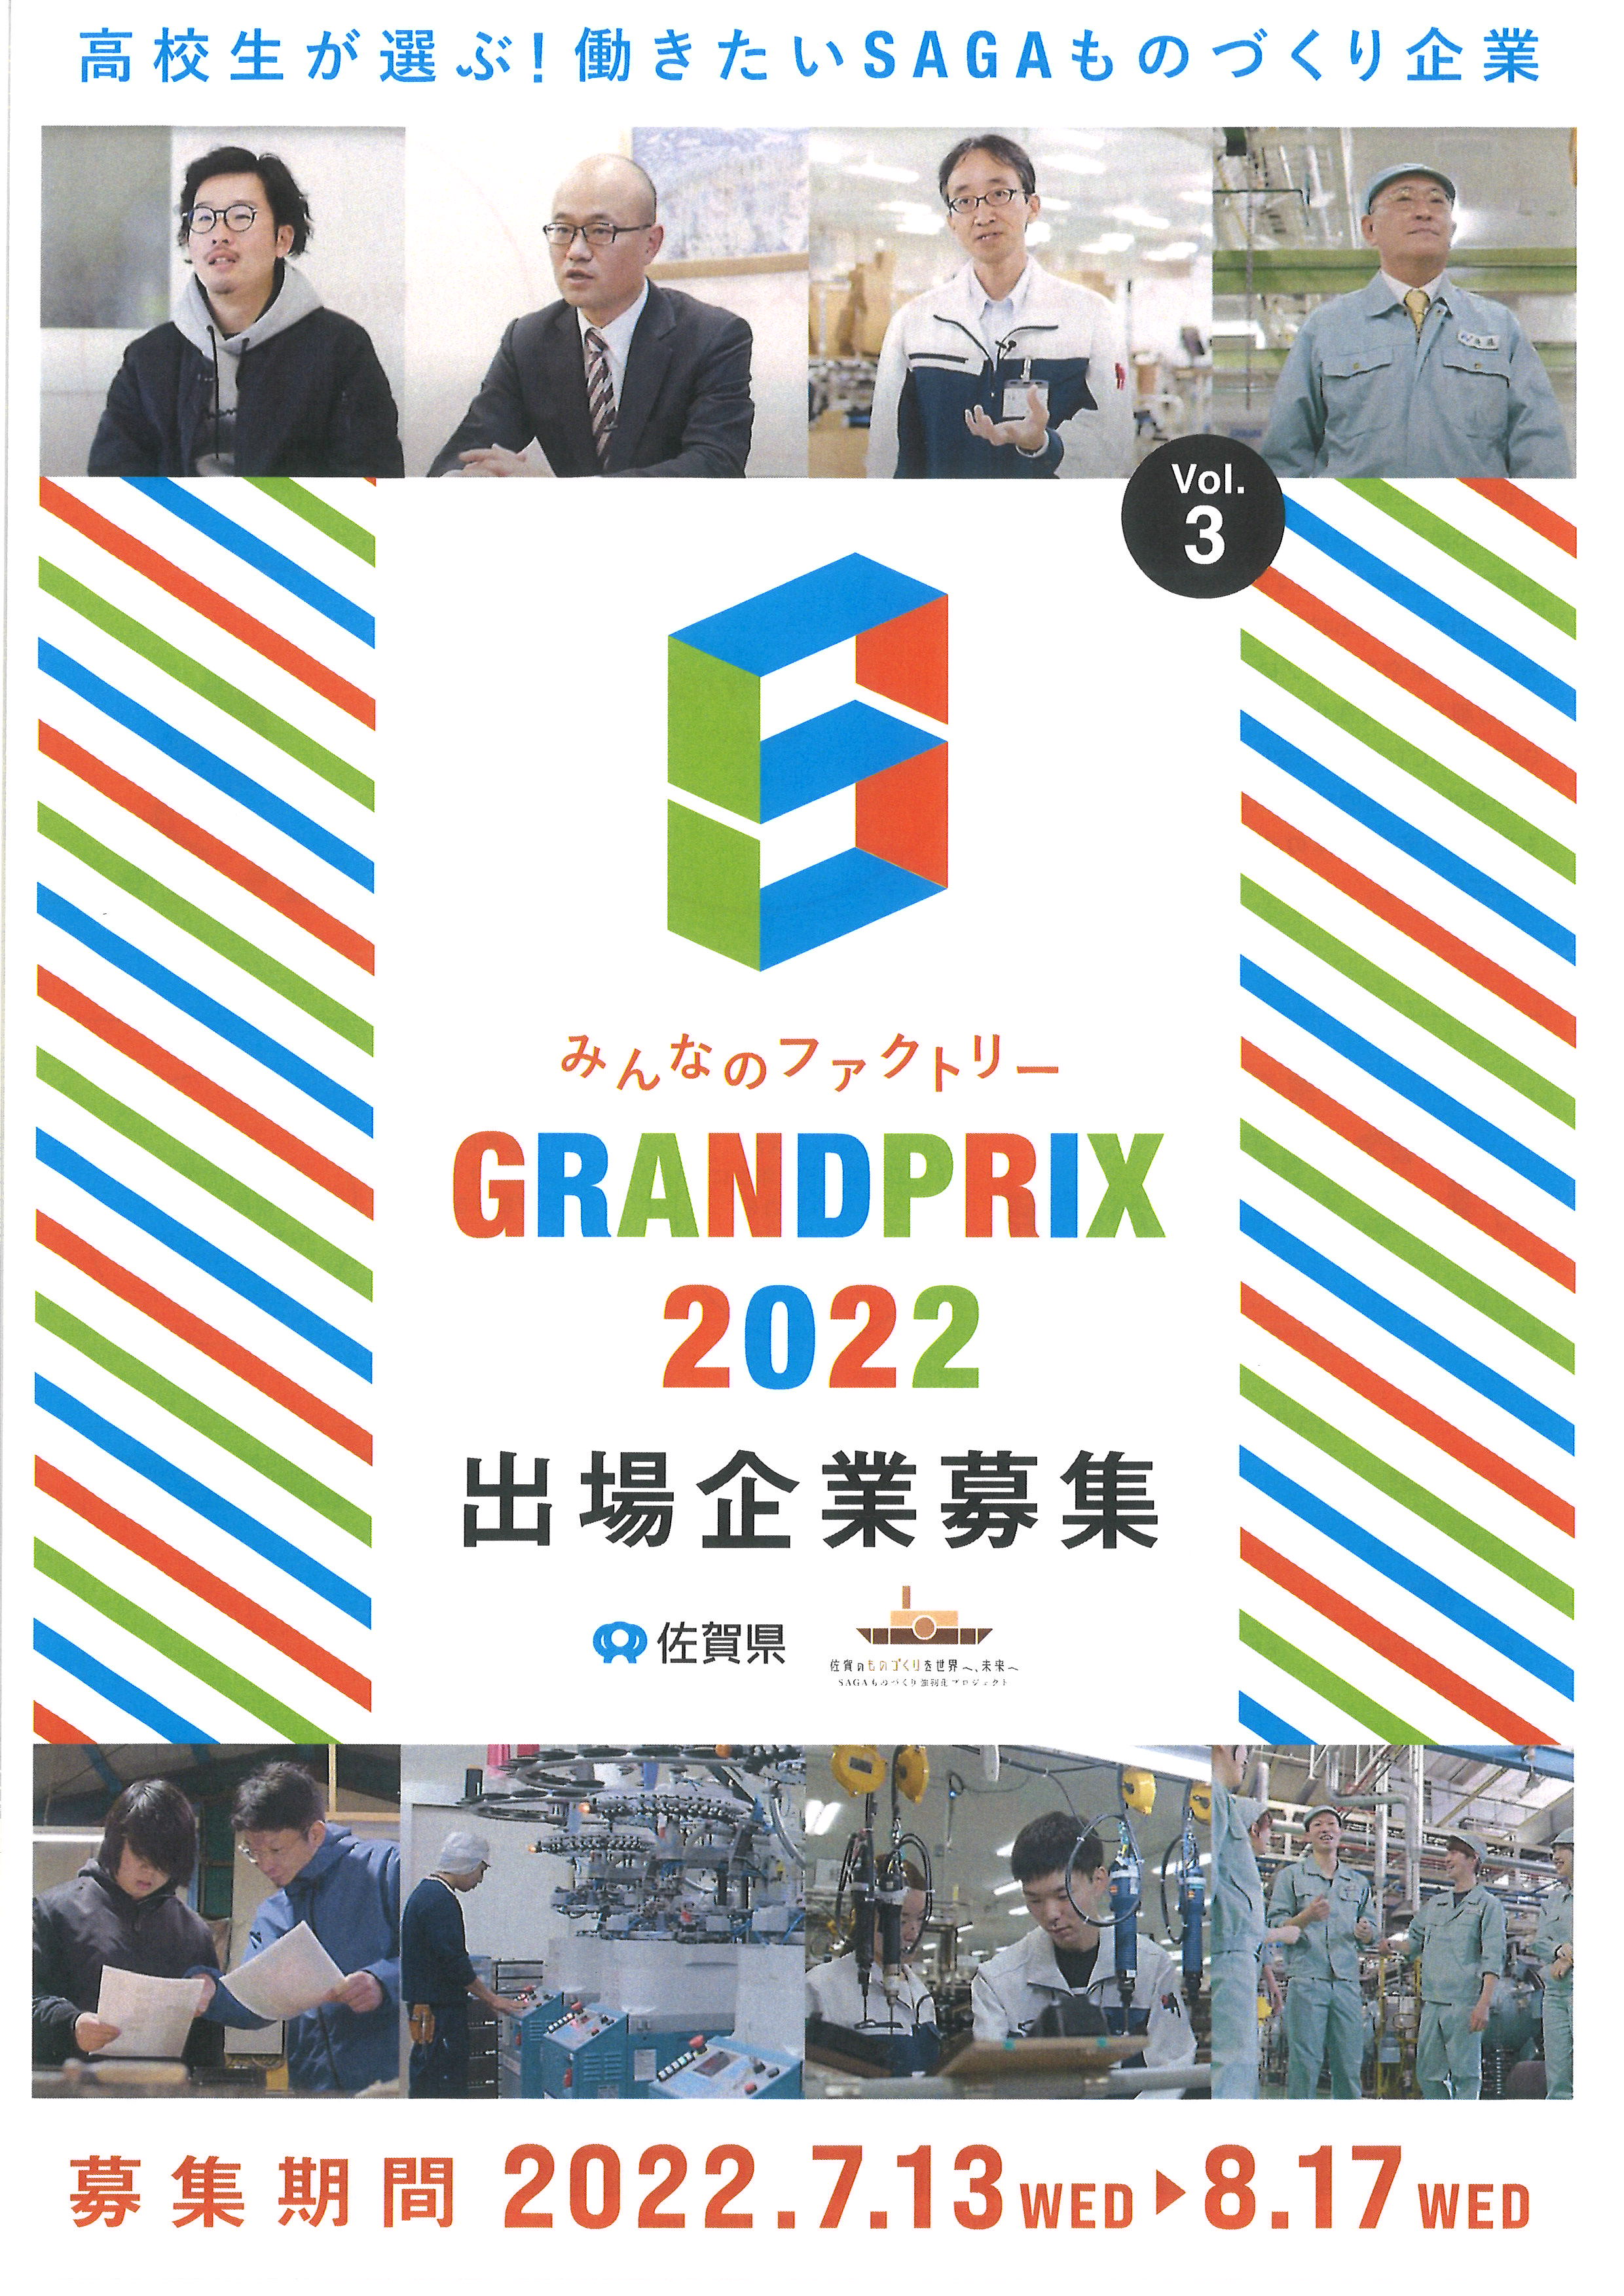 【出場募集】みんなのファクトリー　GRANDPRIX 2022